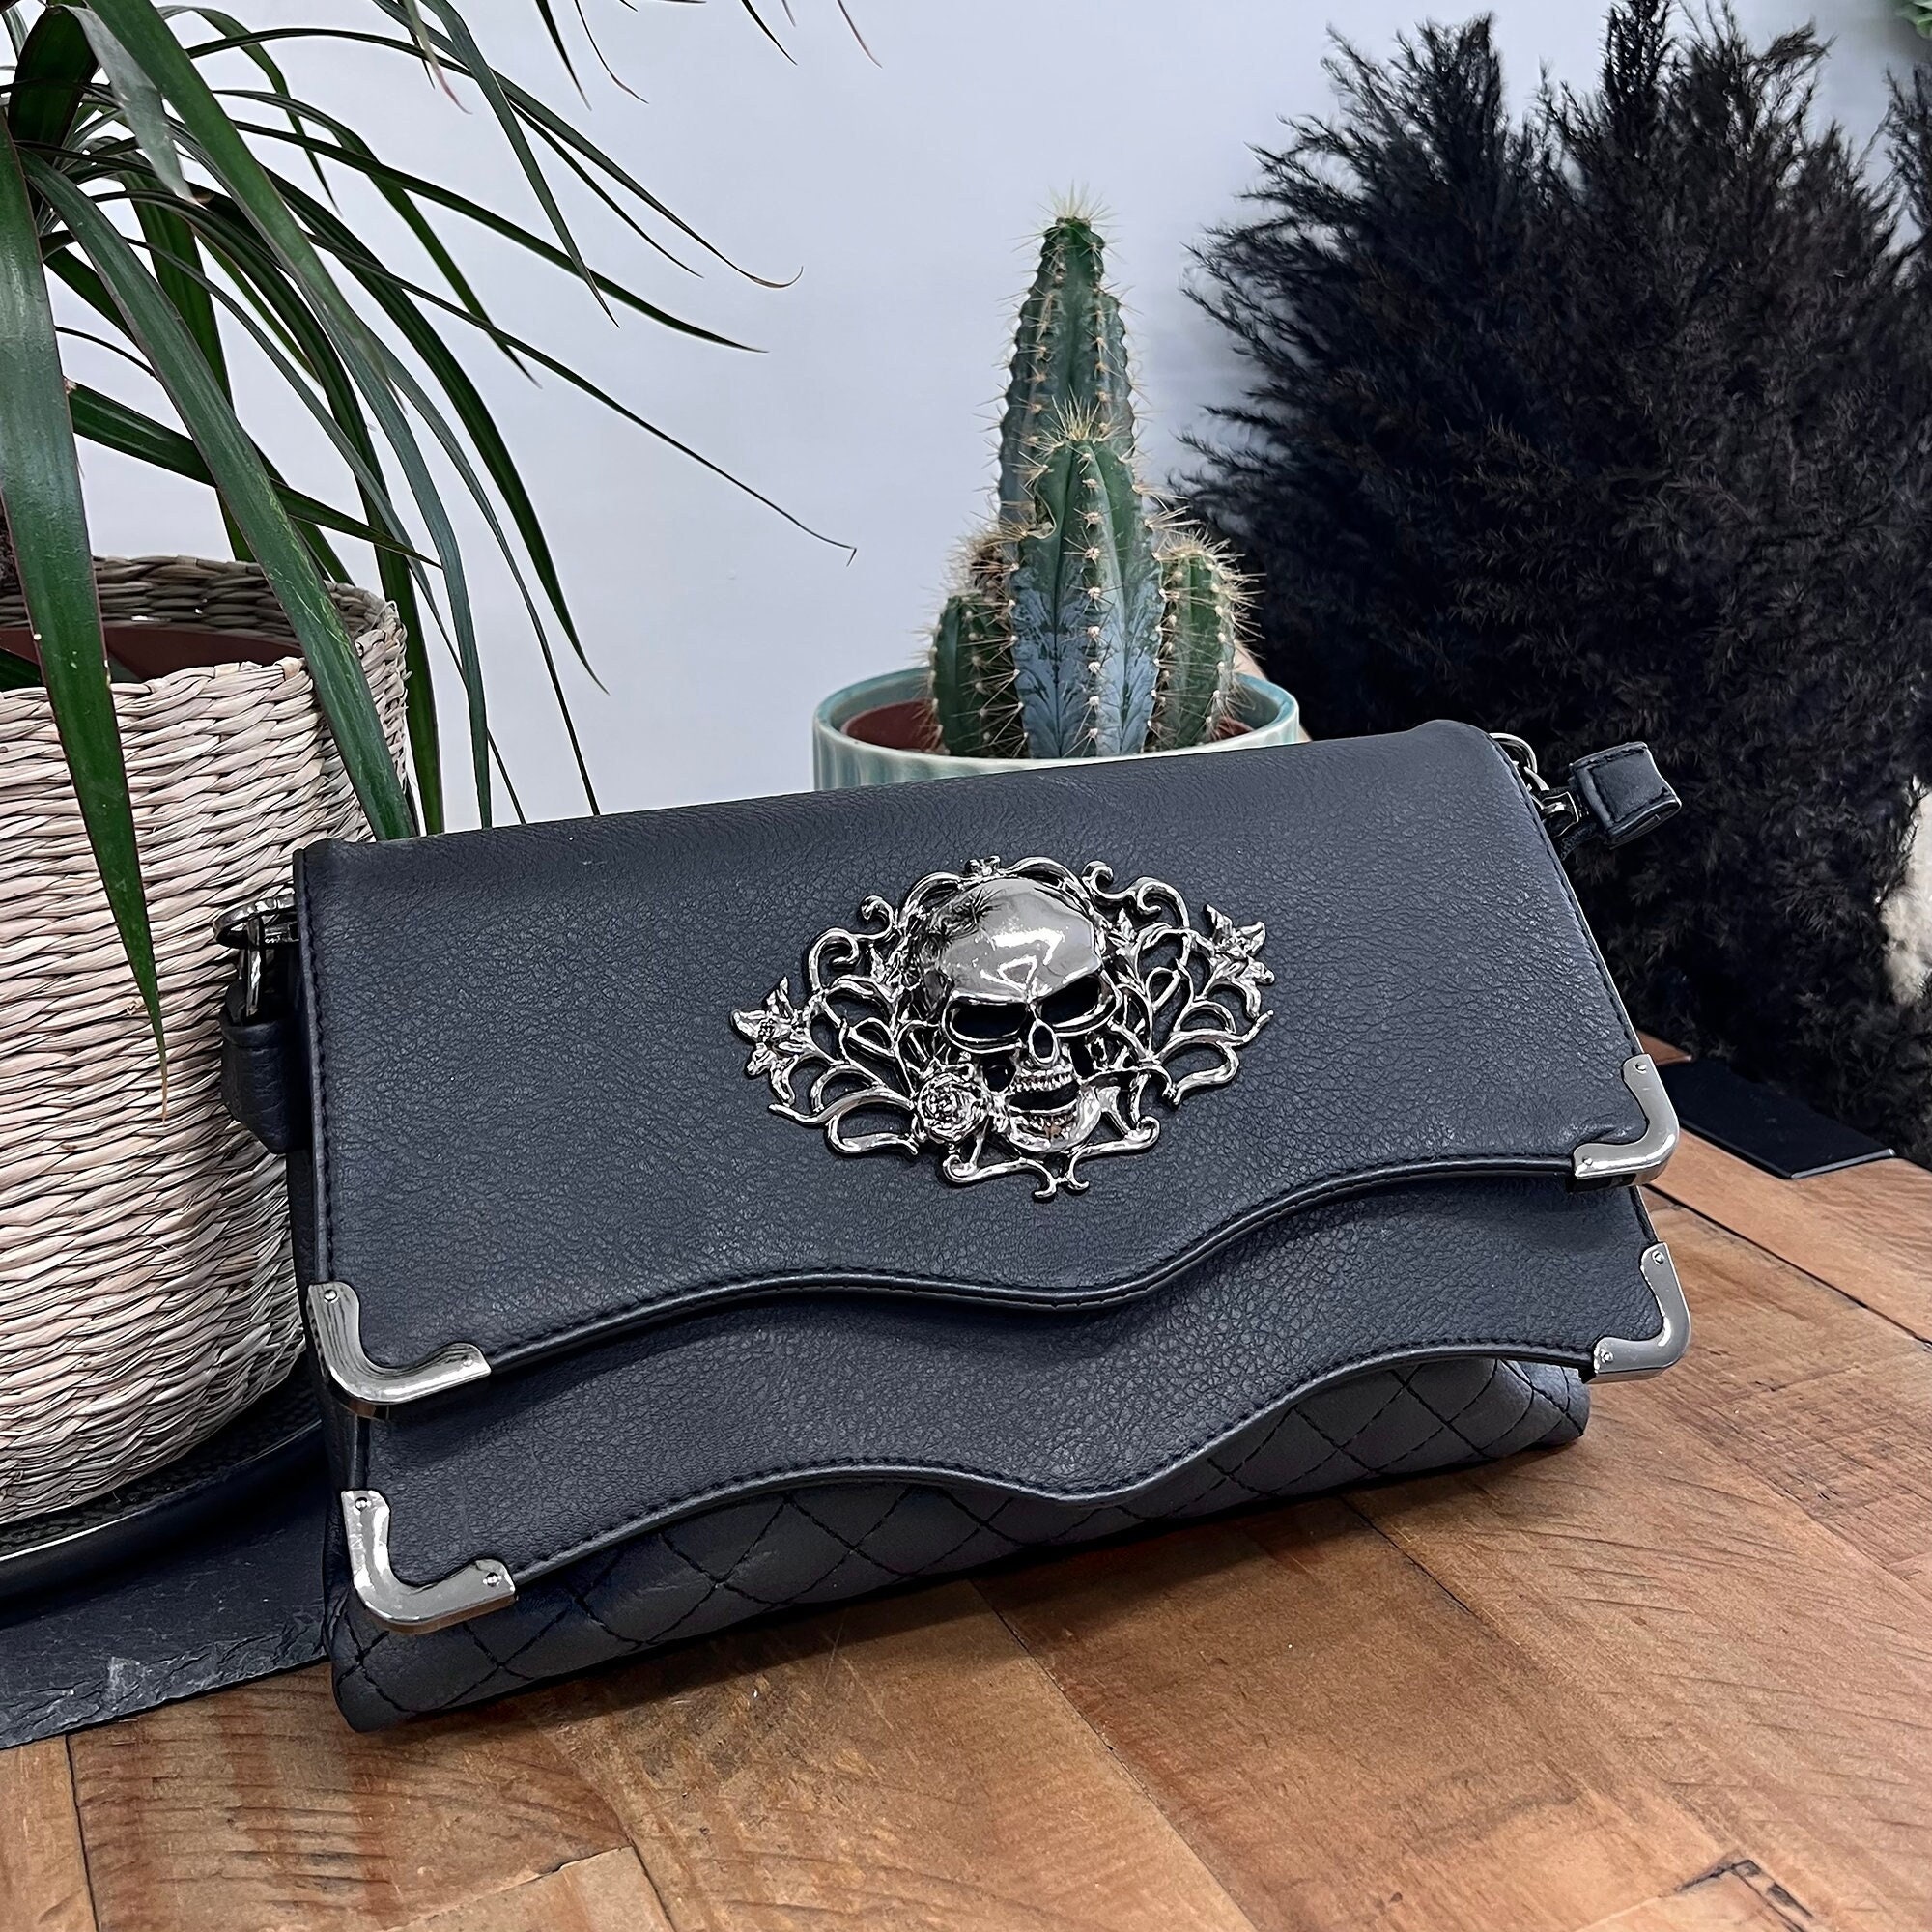 Studded Skull Messenger Bag for Women, Vegan Punk Chain Bag Gothic Purse  Shoulder Crossbody Rivet Handbag